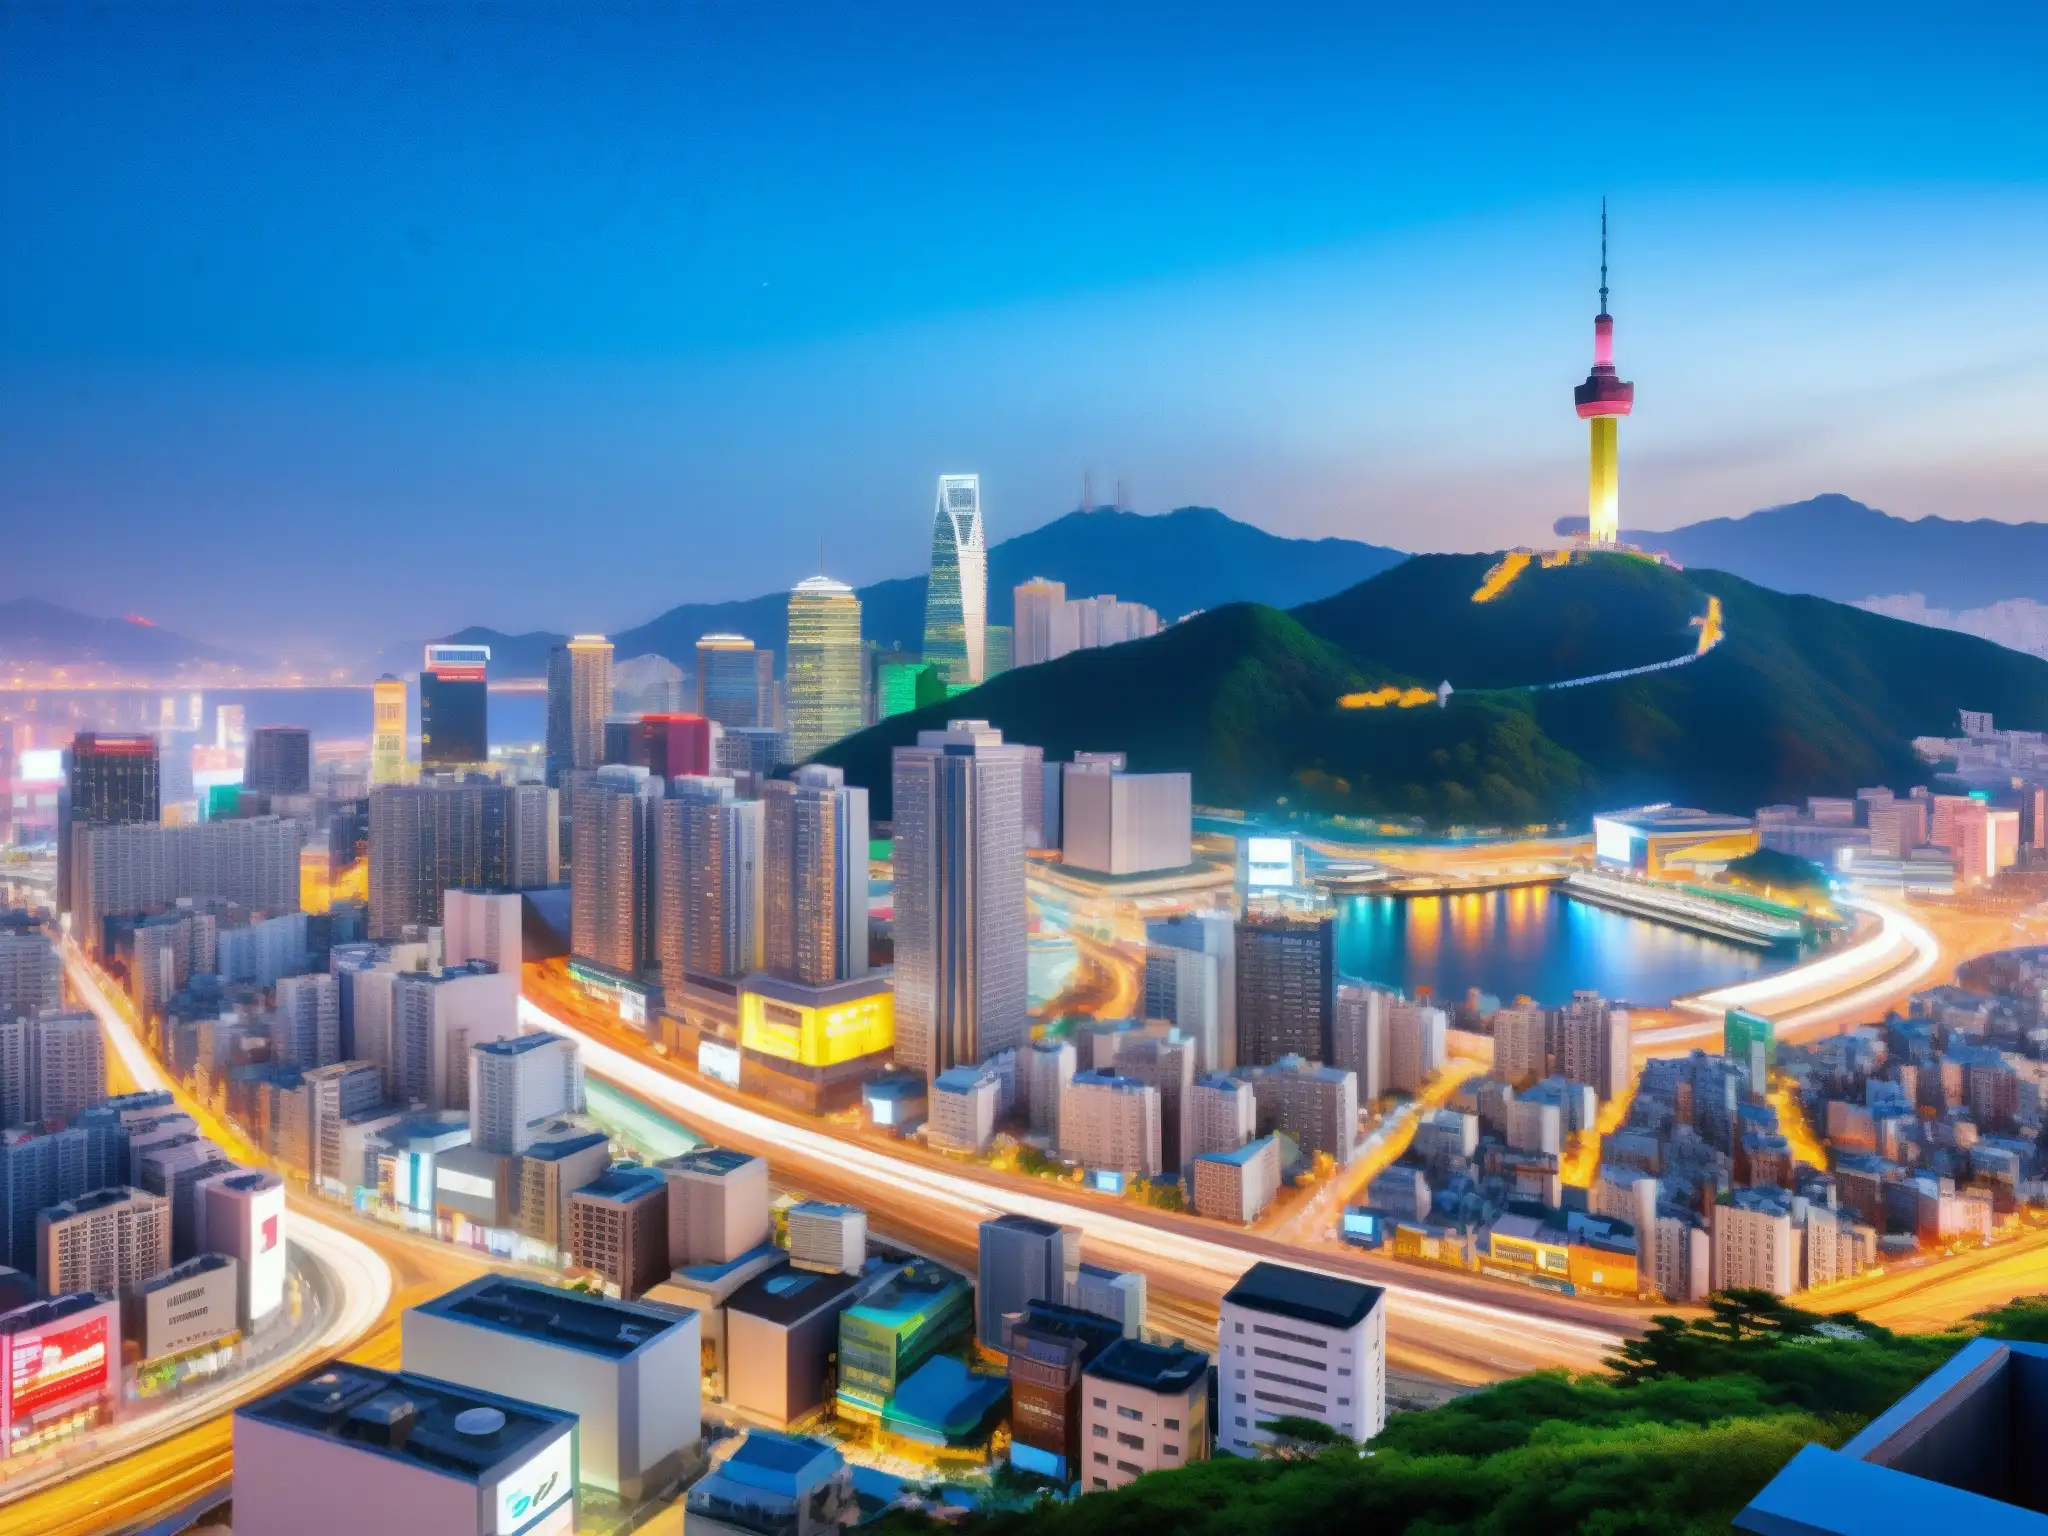 Vibrante paisaje urbano moderno en Seúl, Corea del Sur, con rascacielos, calles bulliciosas y letreros de neón